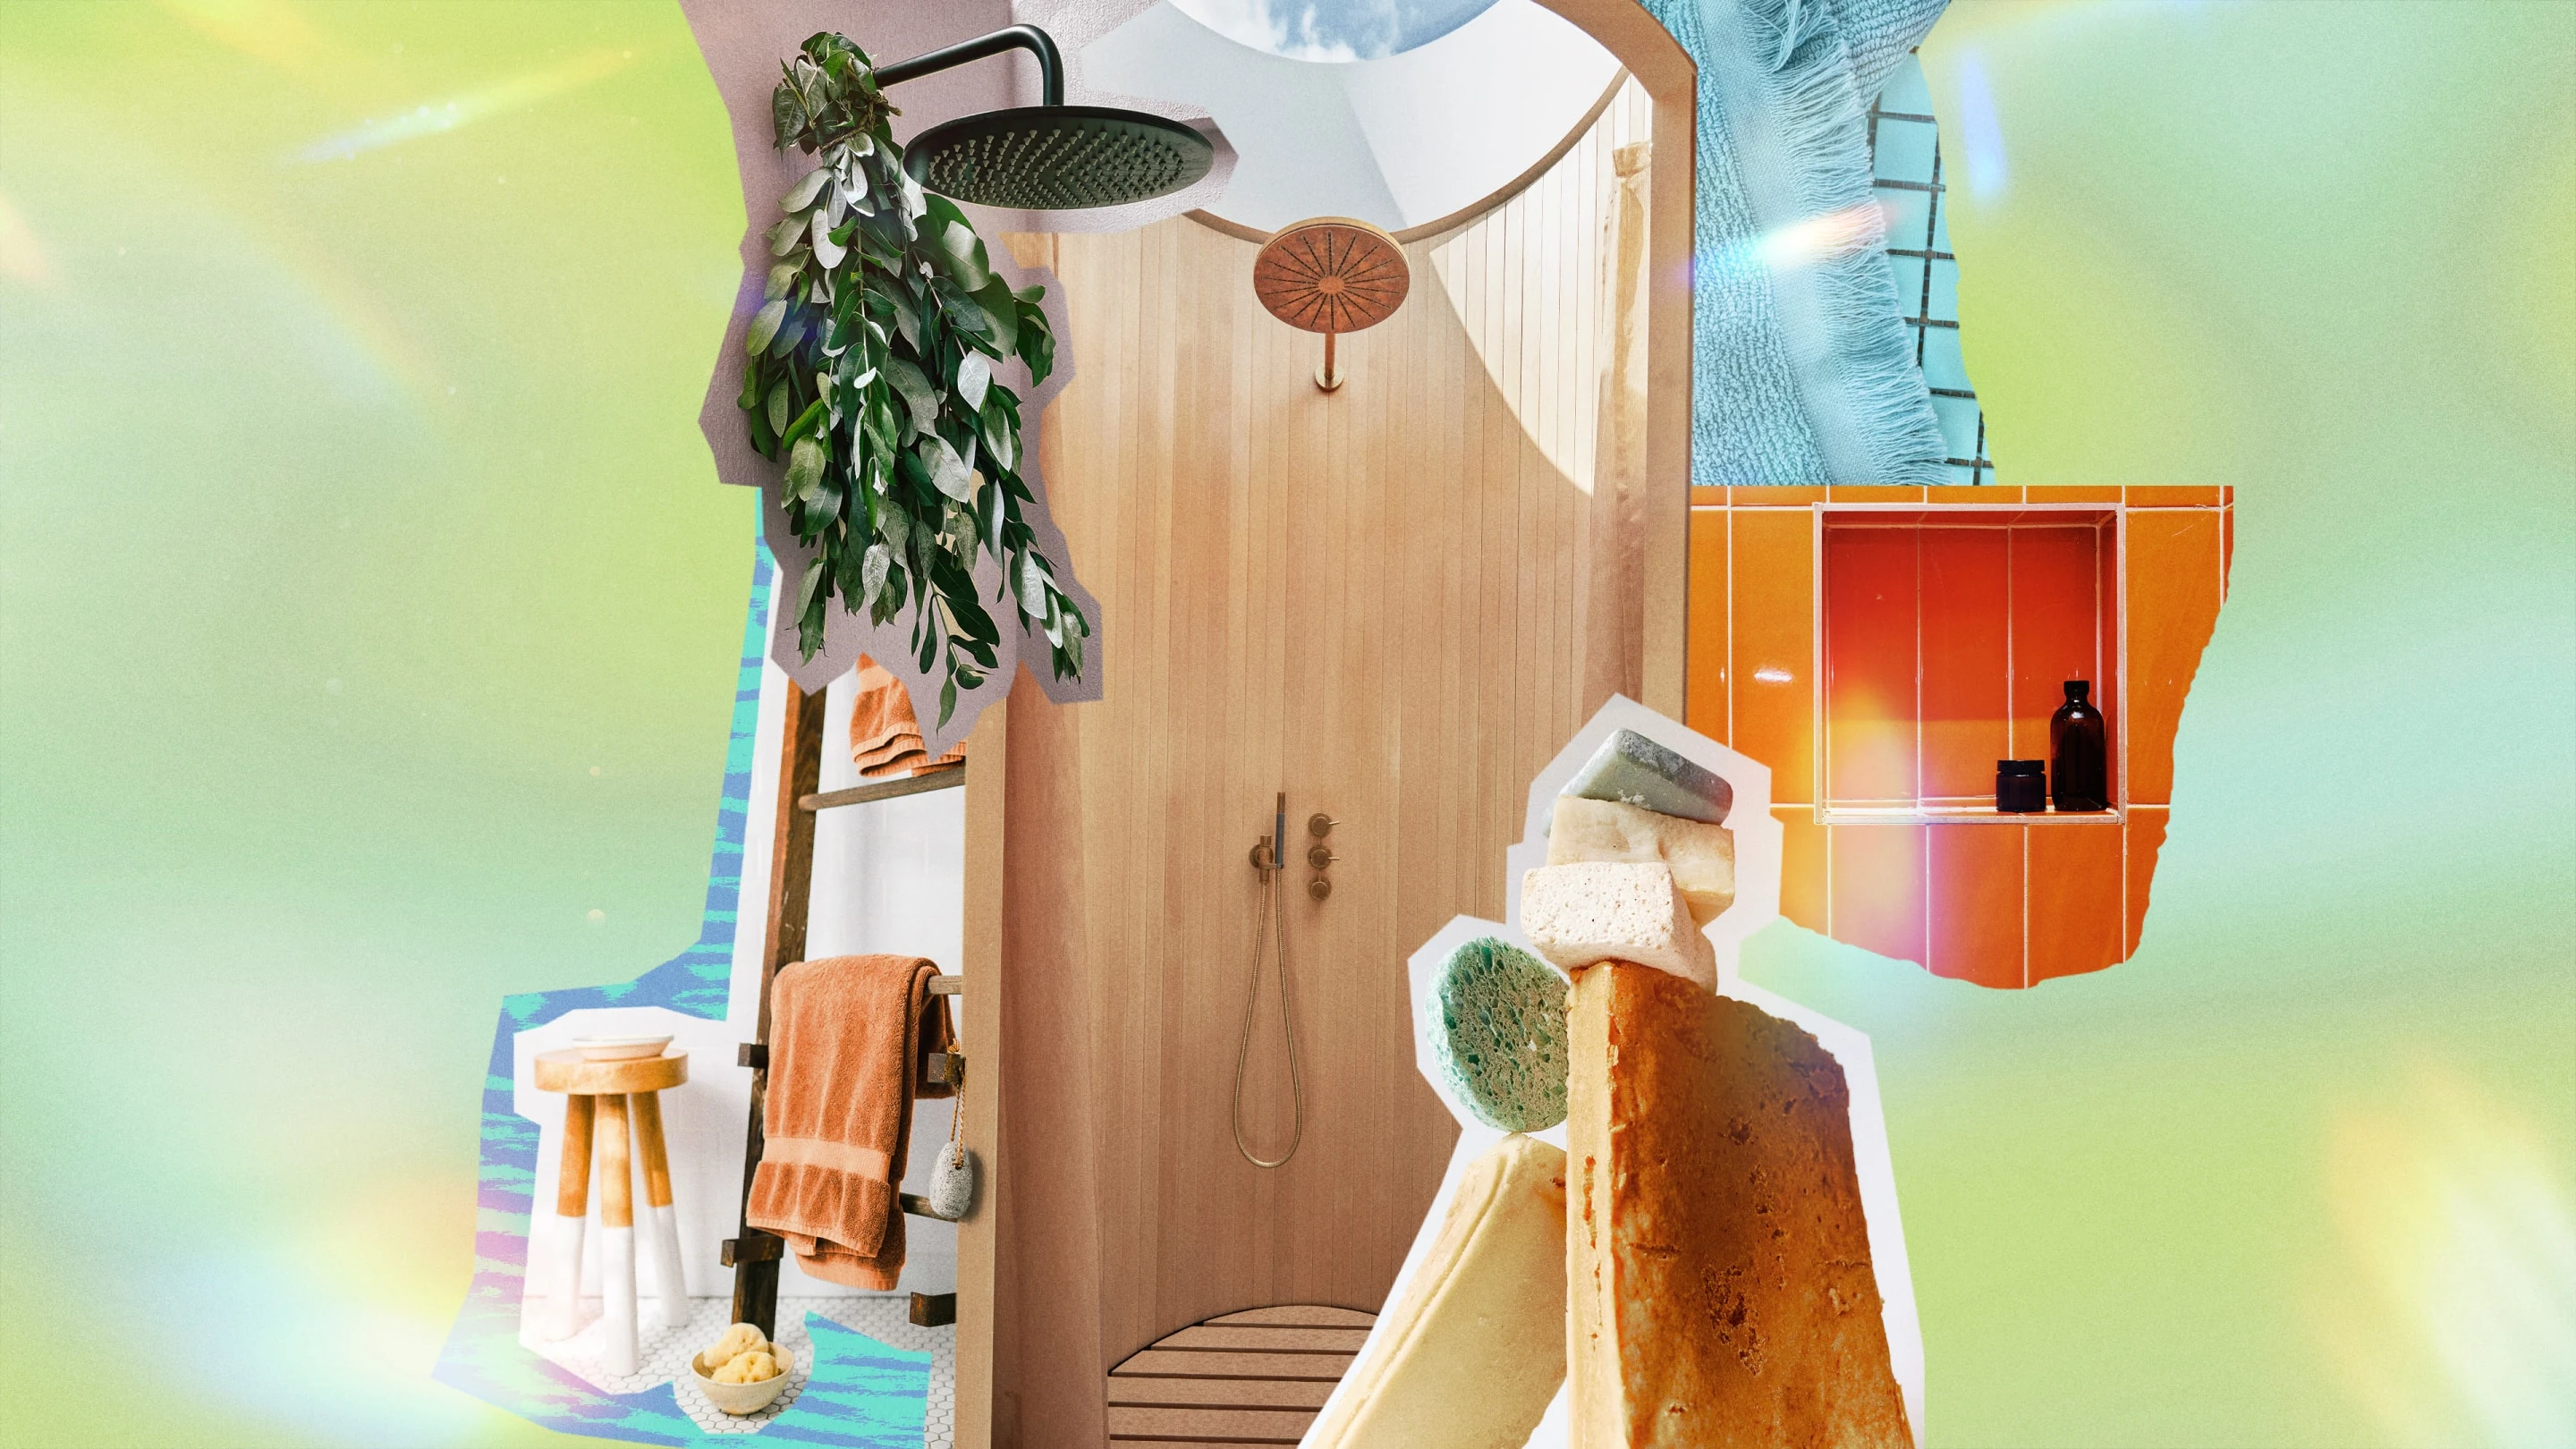 Collage centré sur la douche présentant des feuilles d'eucalyptus suspendues à une pomme de douche, diverses éponges, des serviettes suspendues à une échelle et des produits de douche.